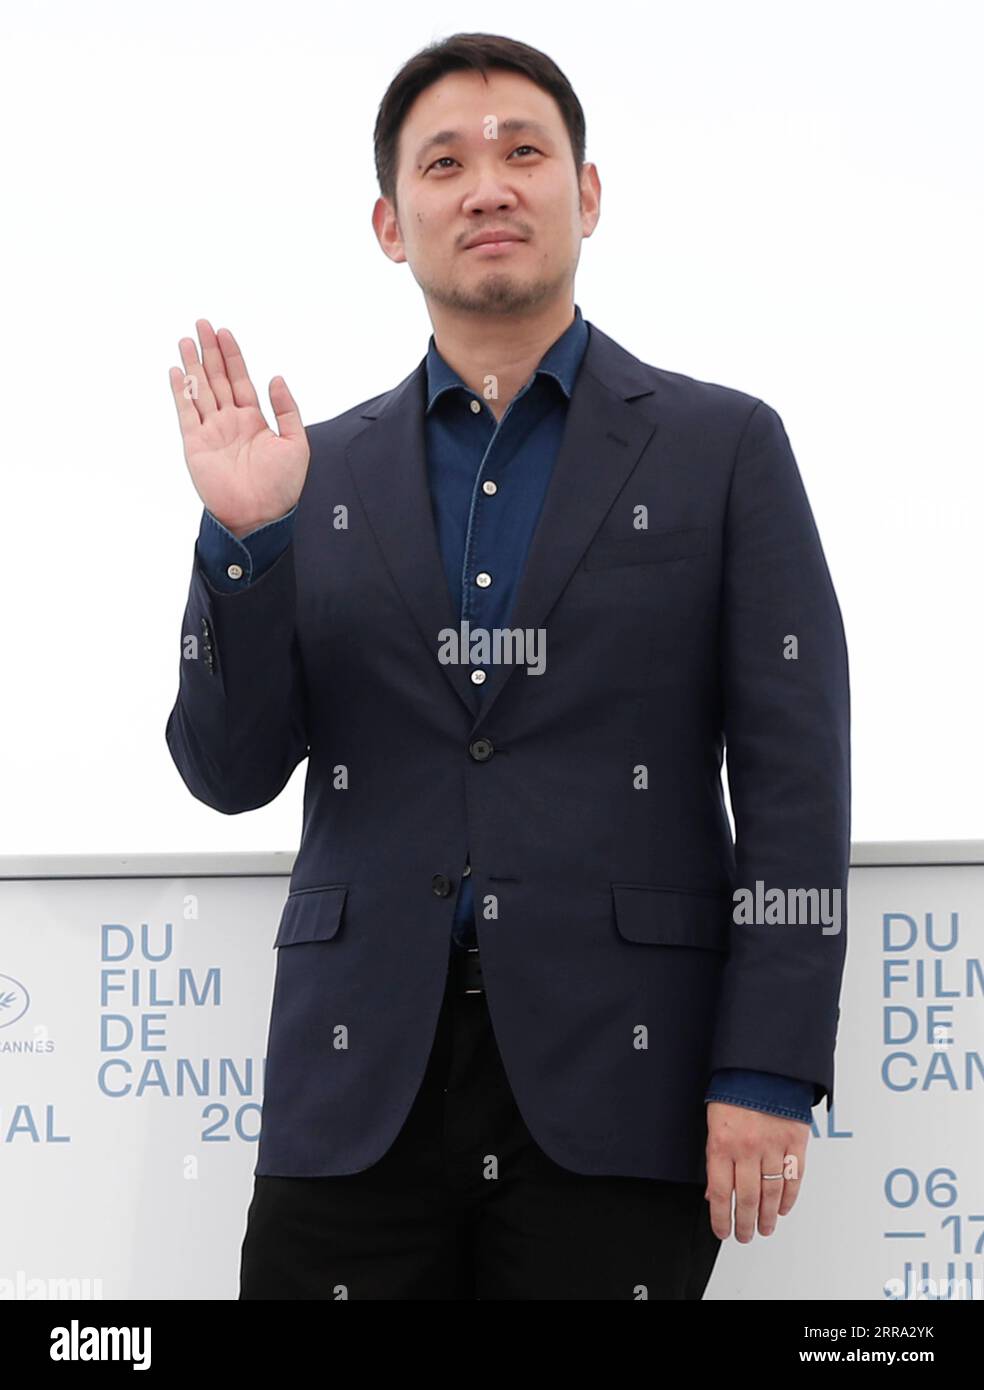 (210712) -- CANNES, 12. Juli 2021 (Xinhua) -- Regisseur Ruysuke Hamaguchi posiert während des Fotocalls für den Film "Drive My Car" beim 74. Jährlichen Cannes Film Festival, in Cannes, Frankreich, 12. Juli 2021. (Xinhua) Stockfoto